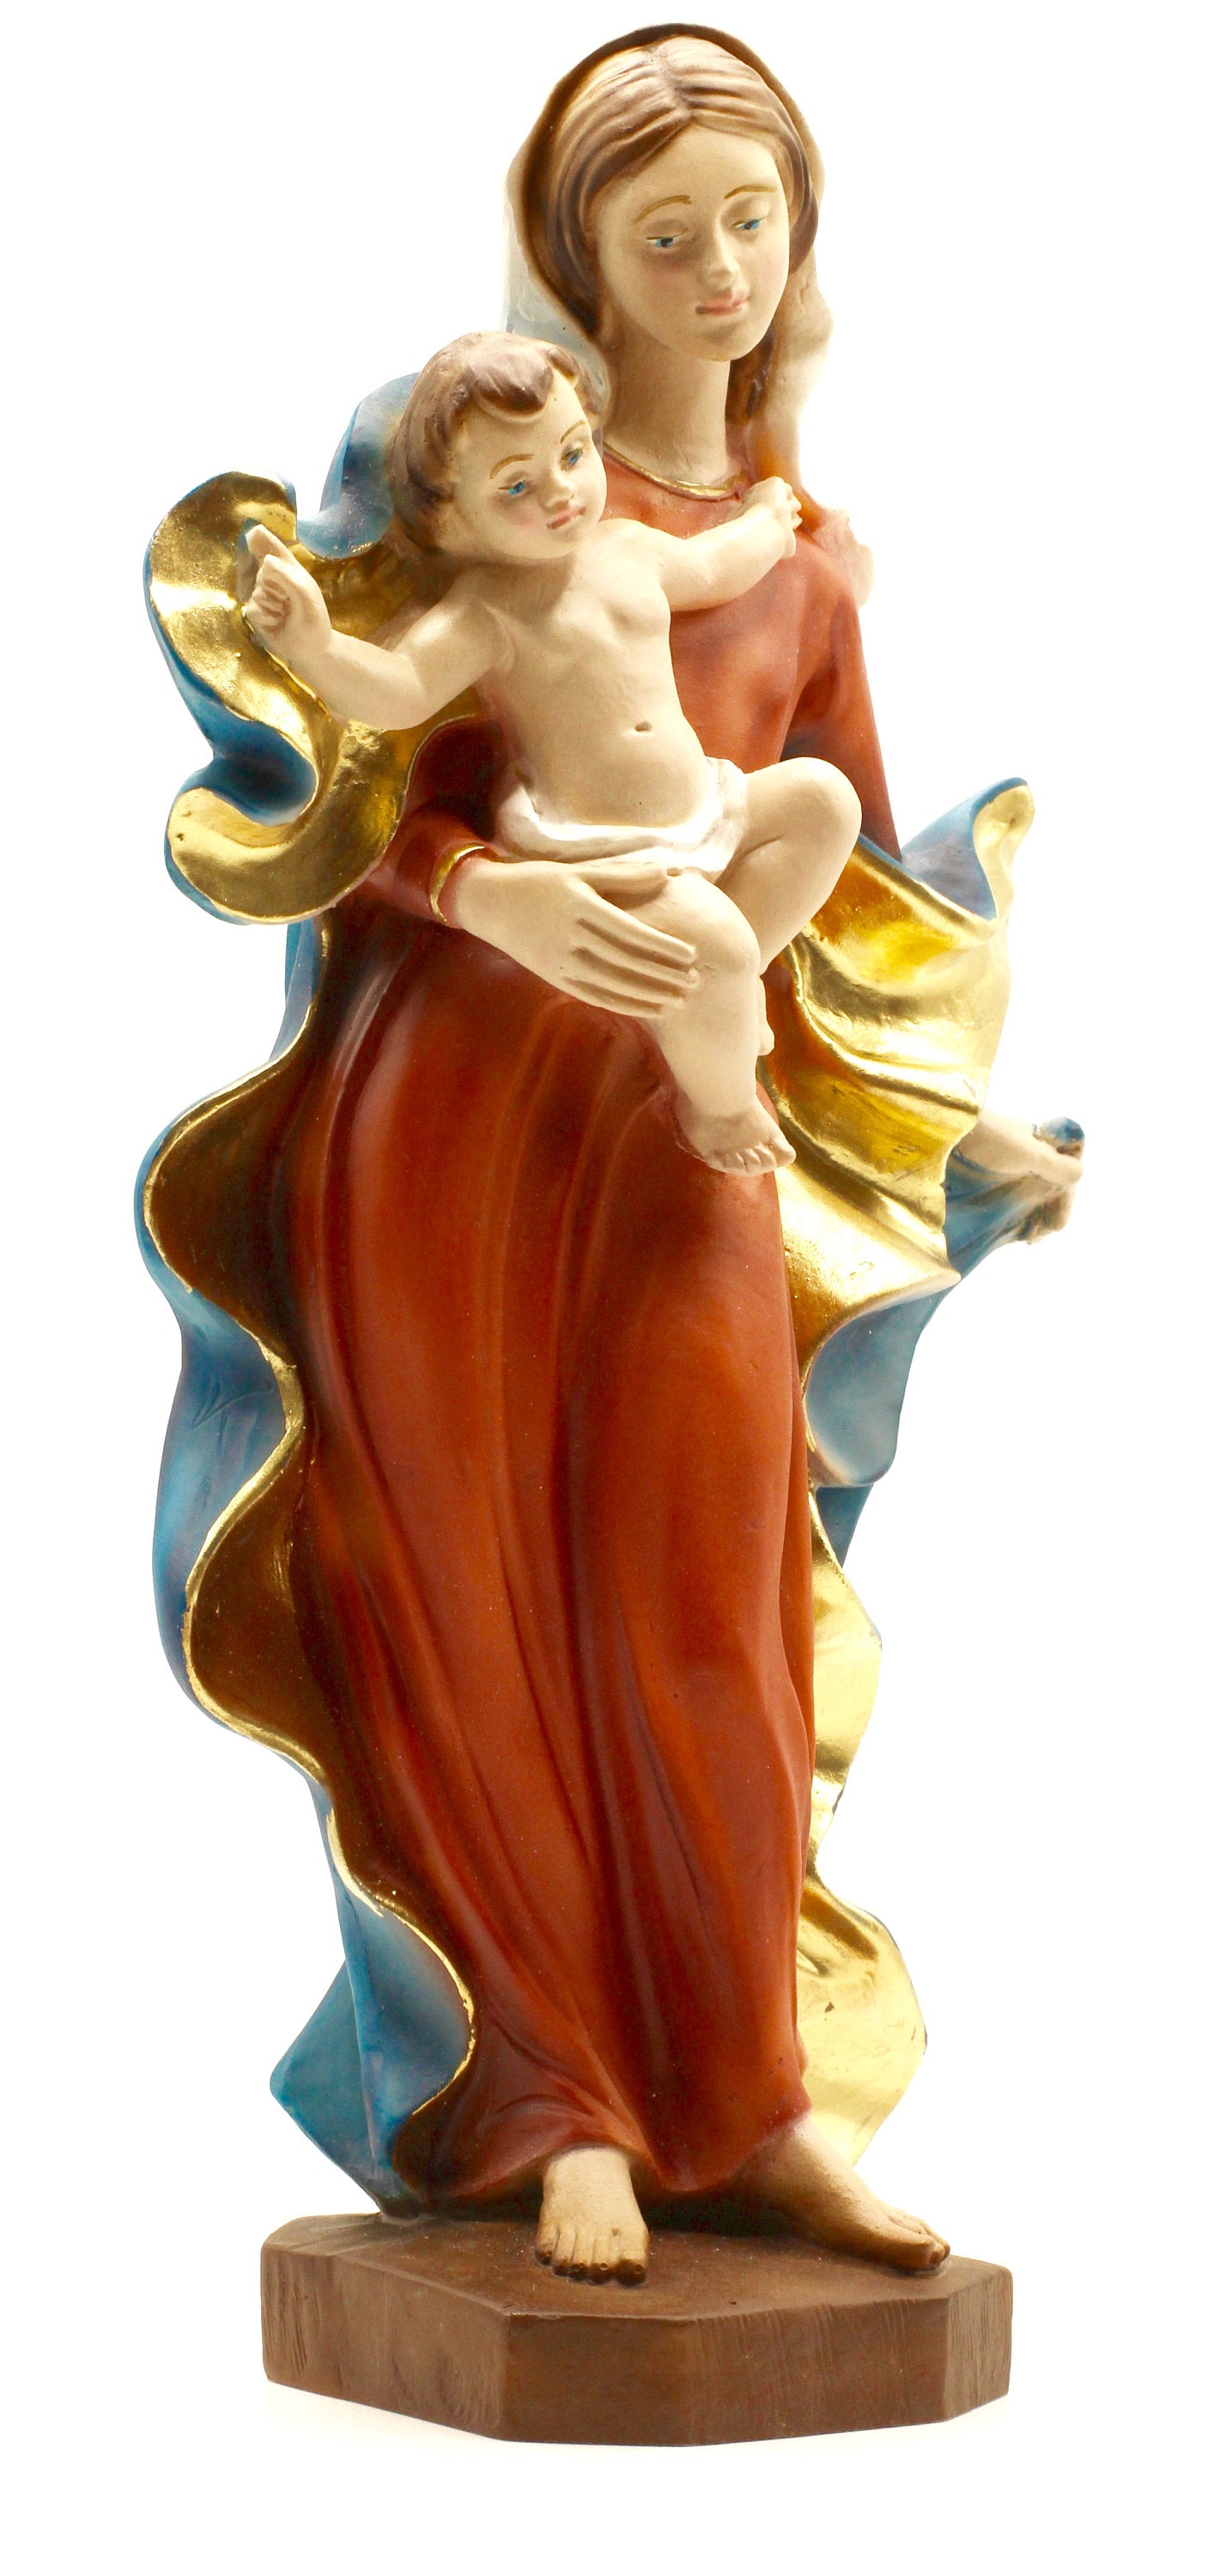 Virgin Mary and Baby Jesus, La Madona y el Nino Jesus